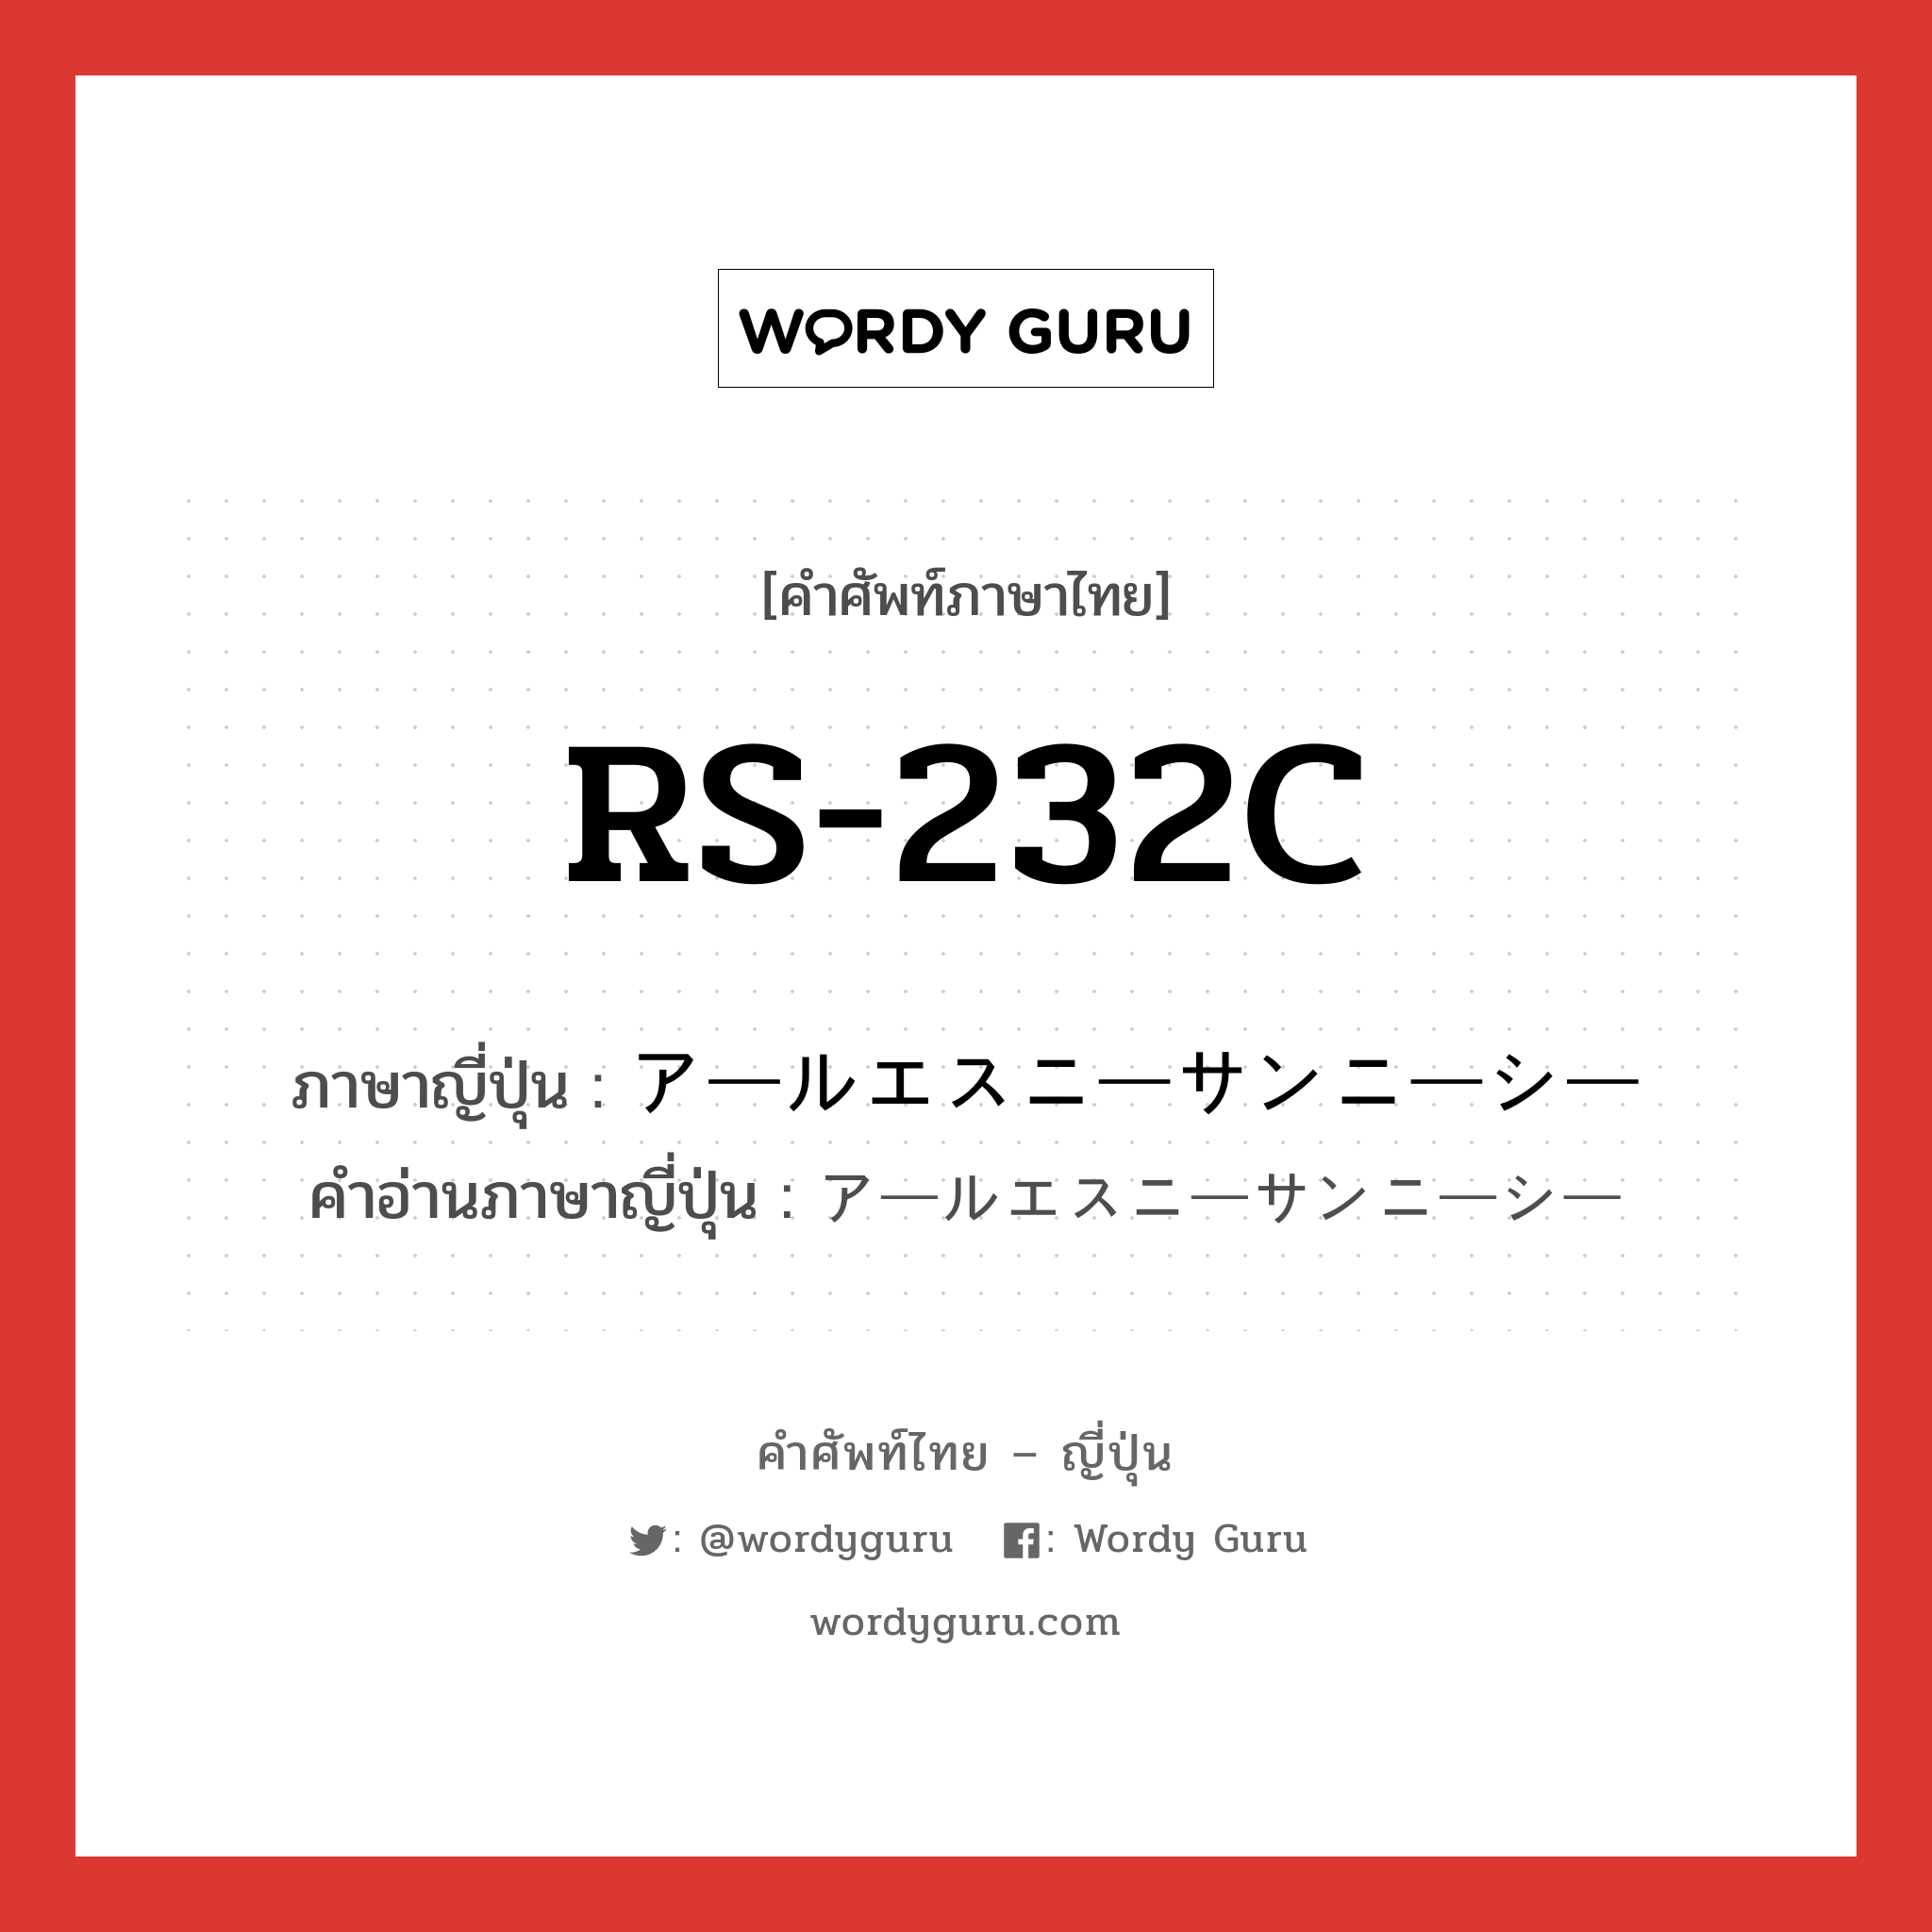 RS-232C ภาษาญี่ปุ่นคืออะไร, คำศัพท์ภาษาไทย - ญี่ปุ่น RS-232C ภาษาญี่ปุ่น アールエスニーサンニーシー คำอ่านภาษาญี่ปุ่น アールエスニーサンニーシー หมวด n หมวด n